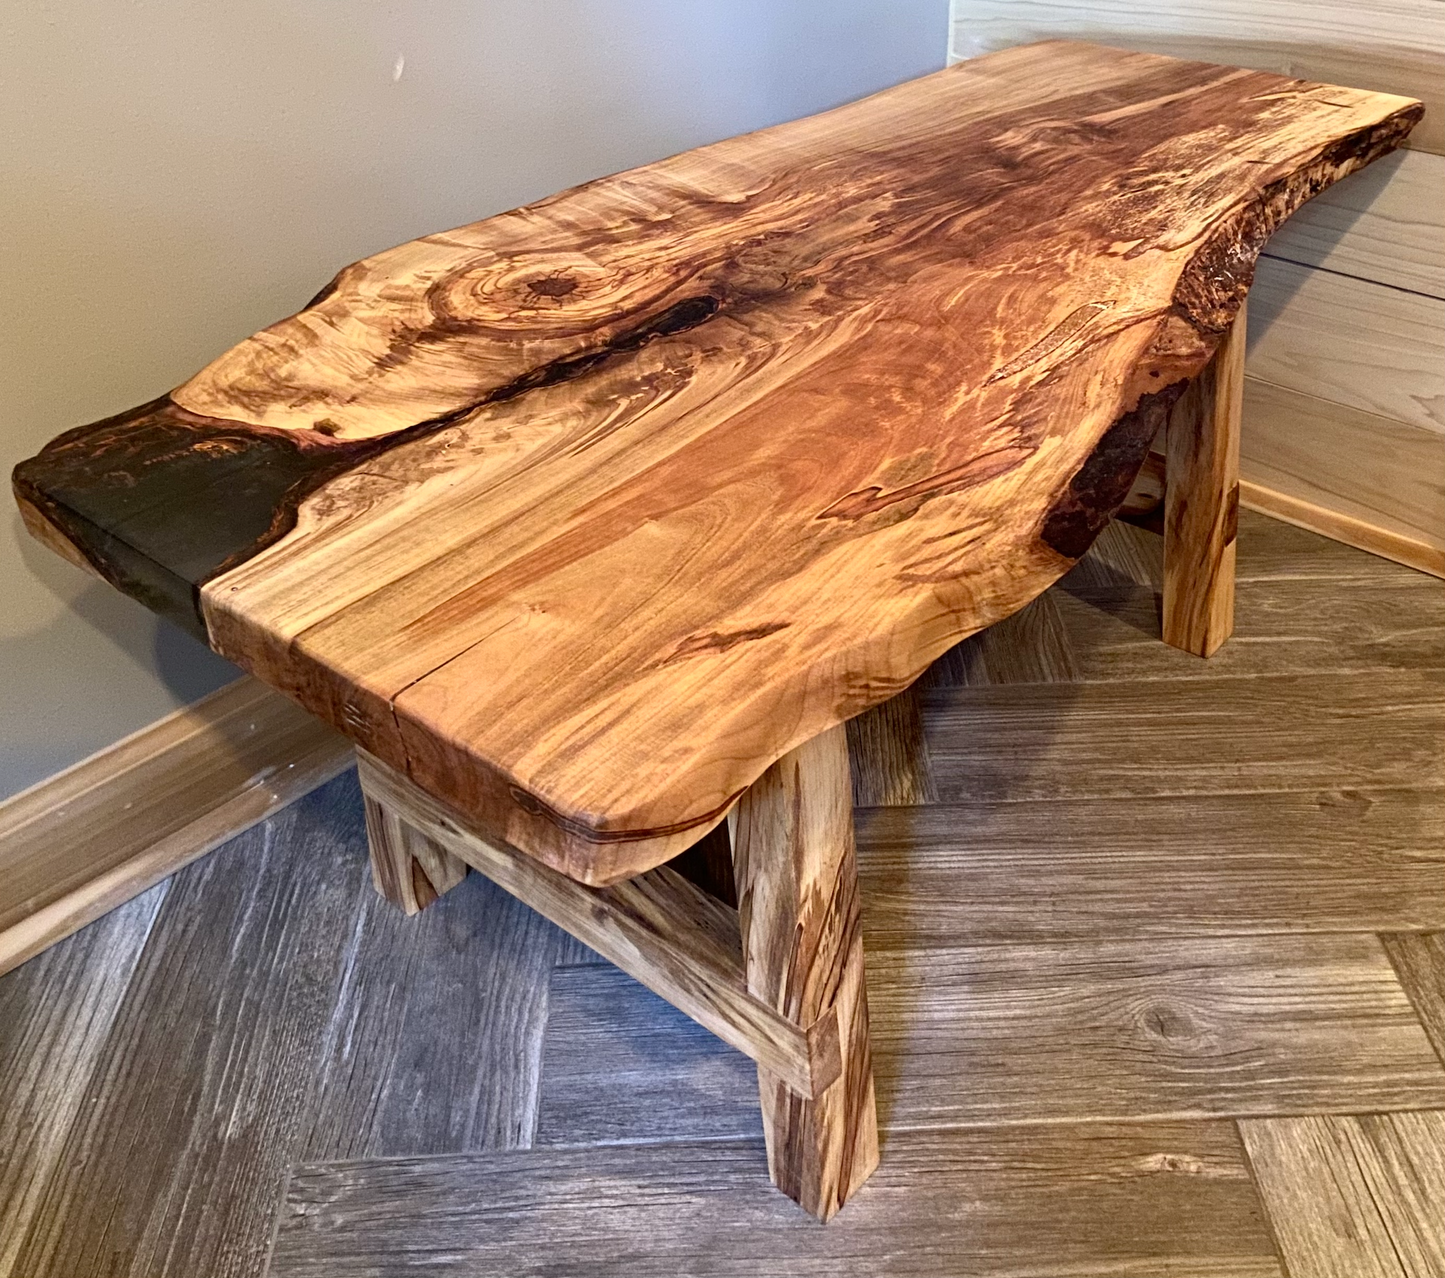 Beautiful Live Edge Ambrosia Maple Coffee Table|Clean Rustic Coffee Table|Live Edge Maple Table|Live Edge Coffee Table w/Maple Wood Legs